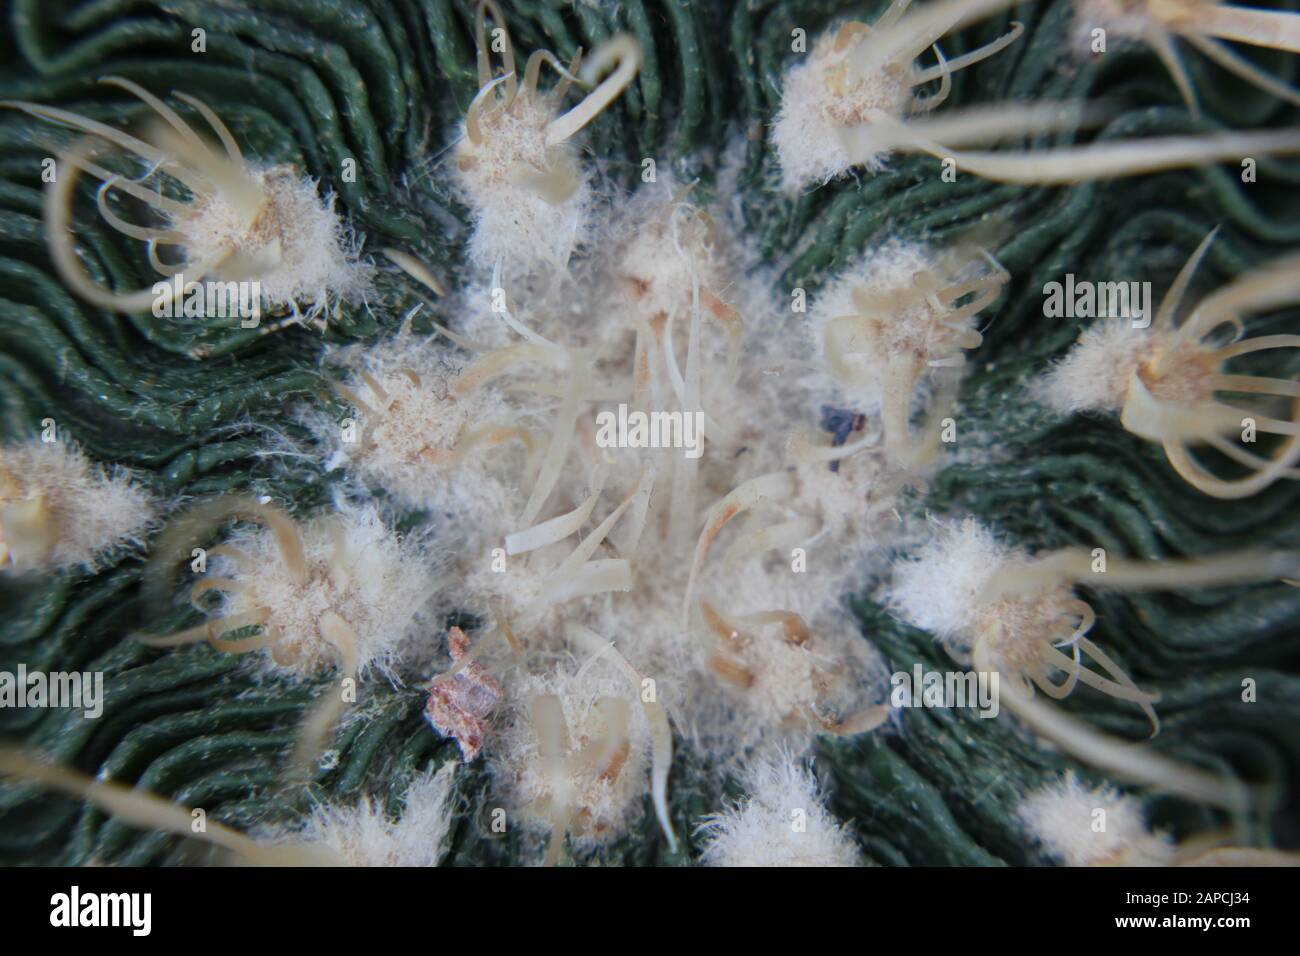 Wave Cactus, Brain Cactus, Zacatecasensis, Stenocactus multicostatus, Stock Photo